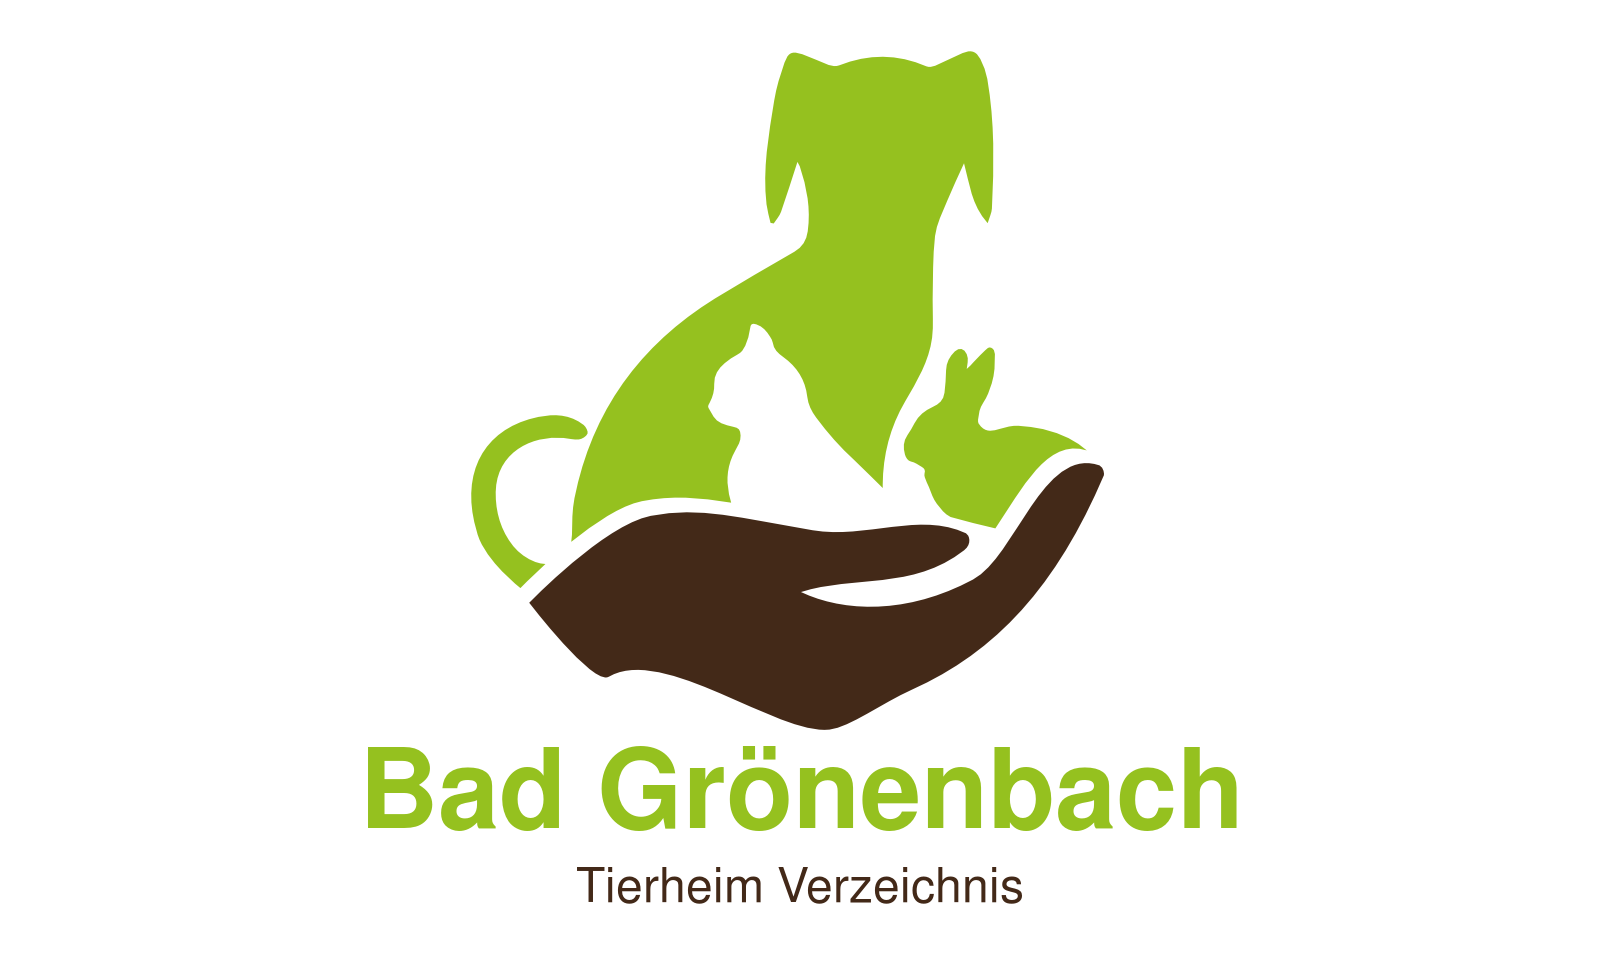 Tierheim Bad Grönenbach